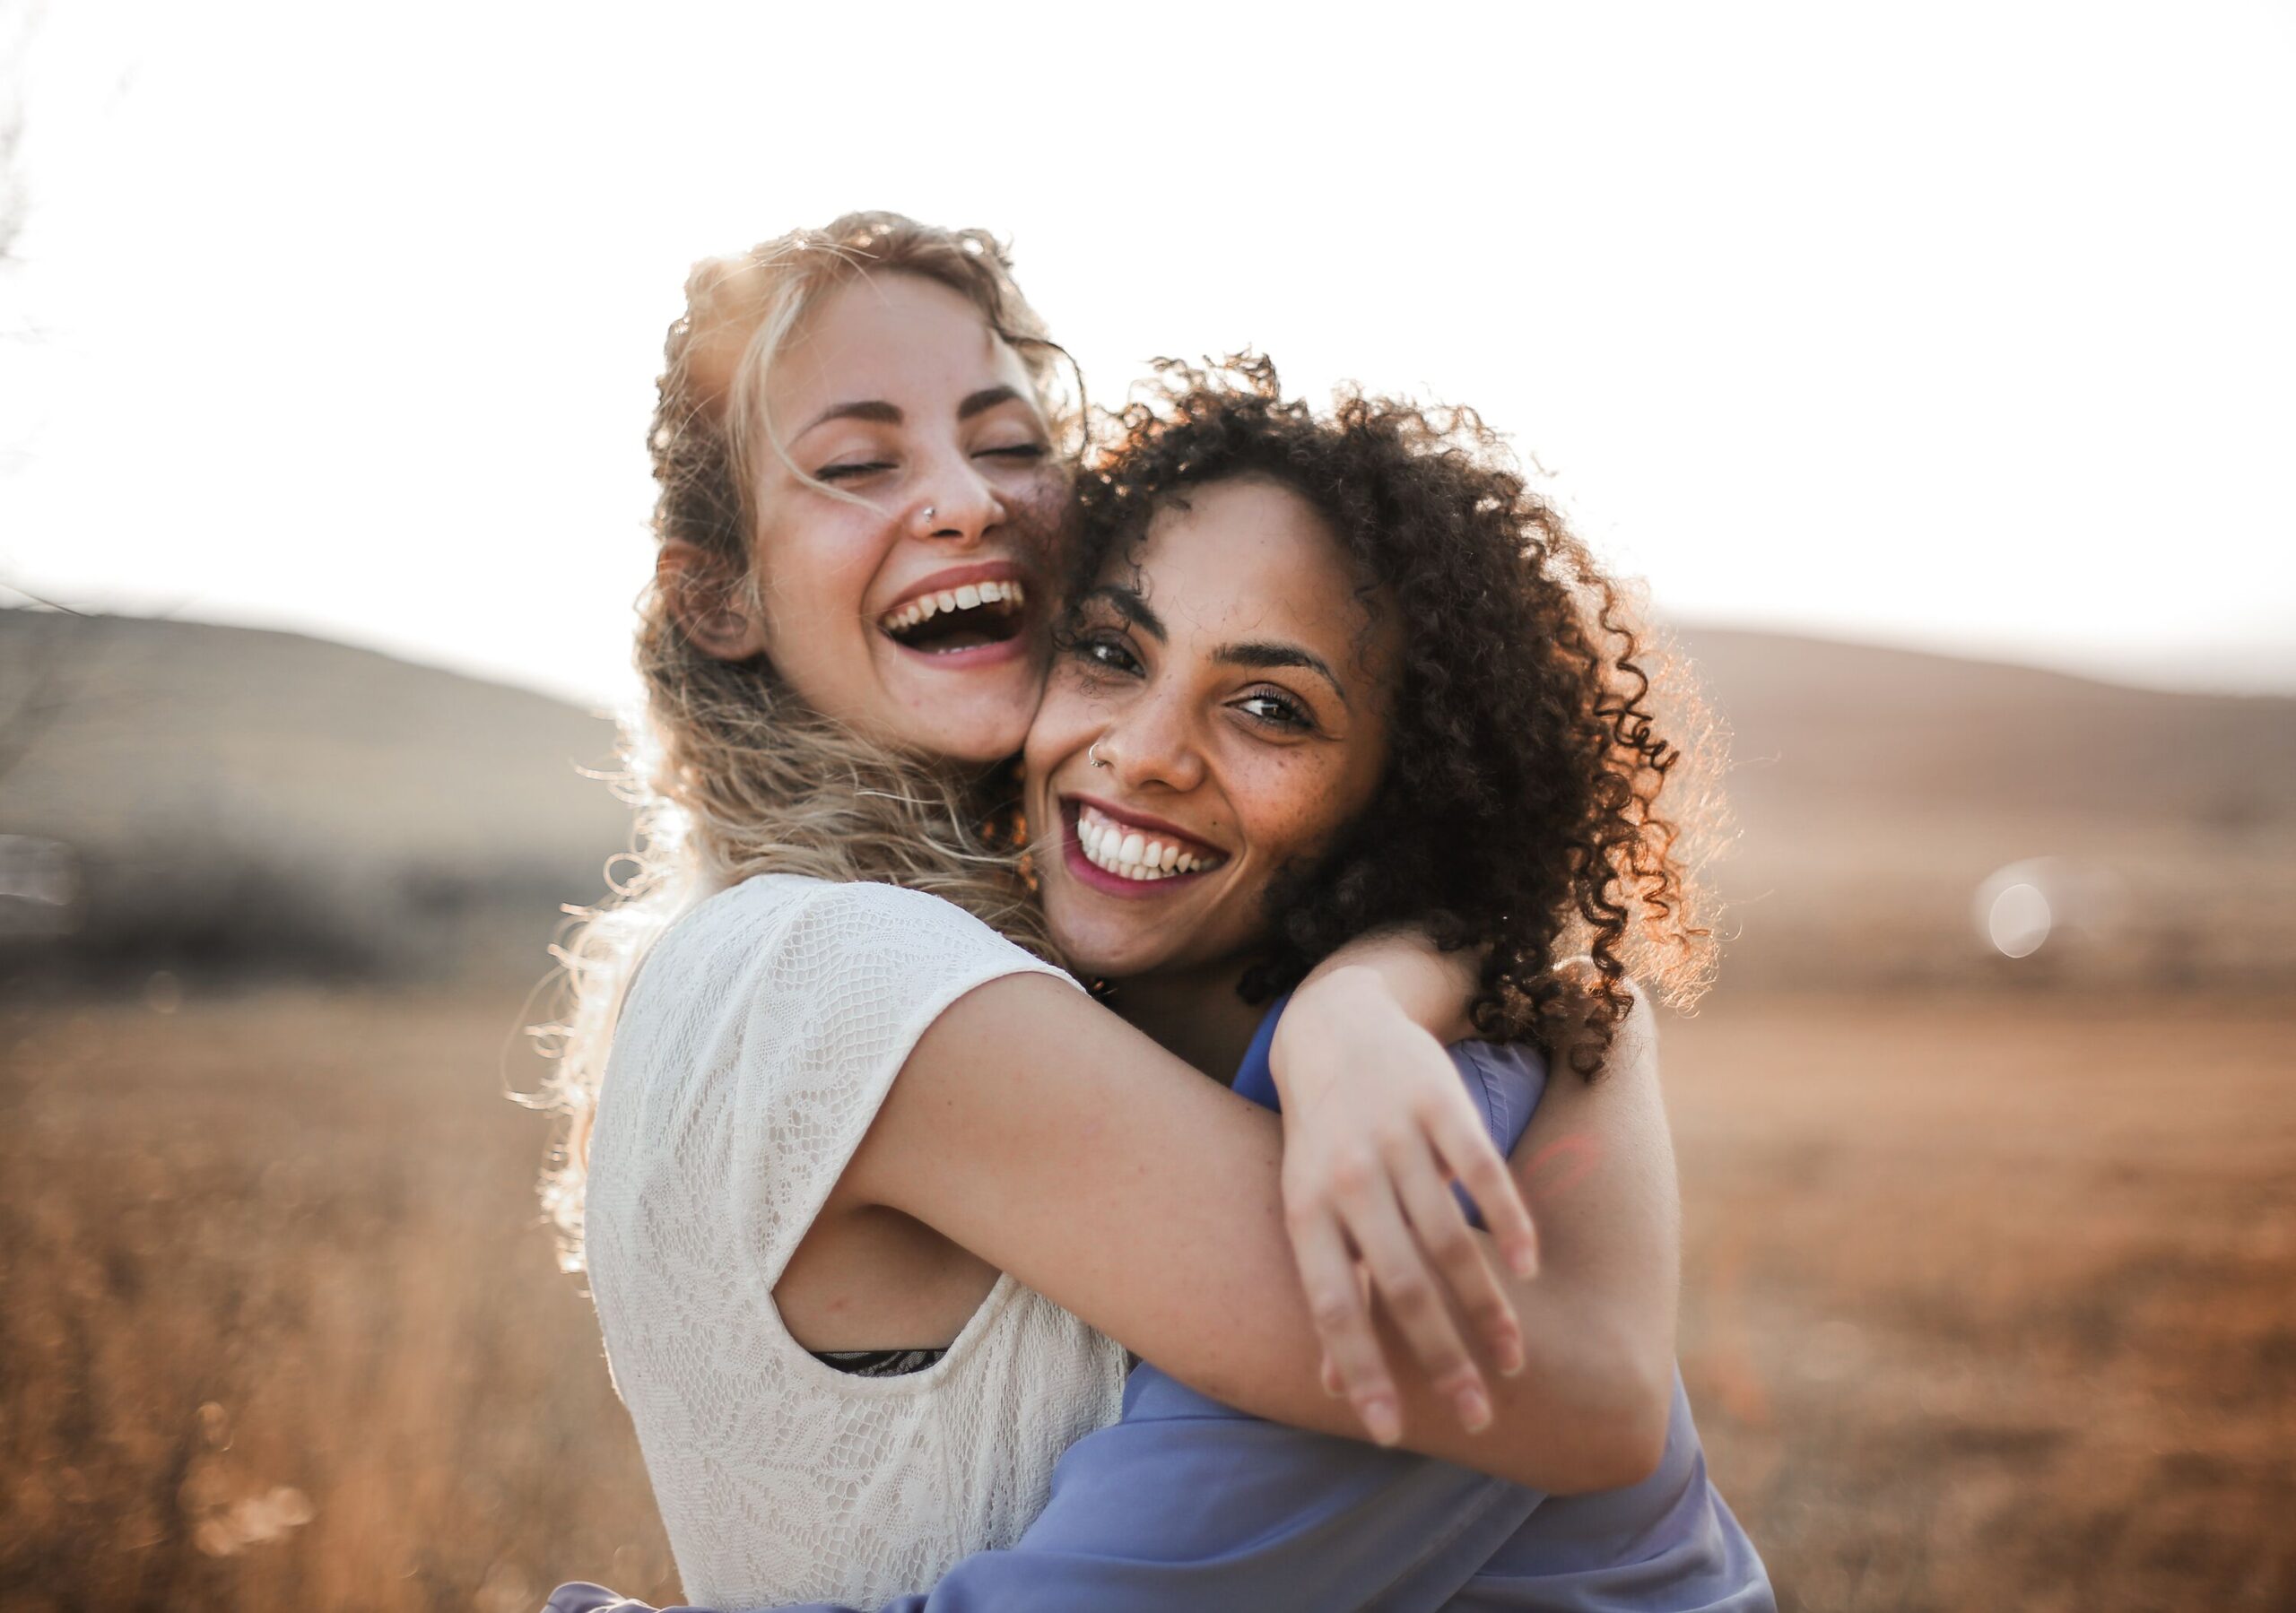 Zwei Frauen umarmen sich und zeigen damit ihre Beziehung zueinander